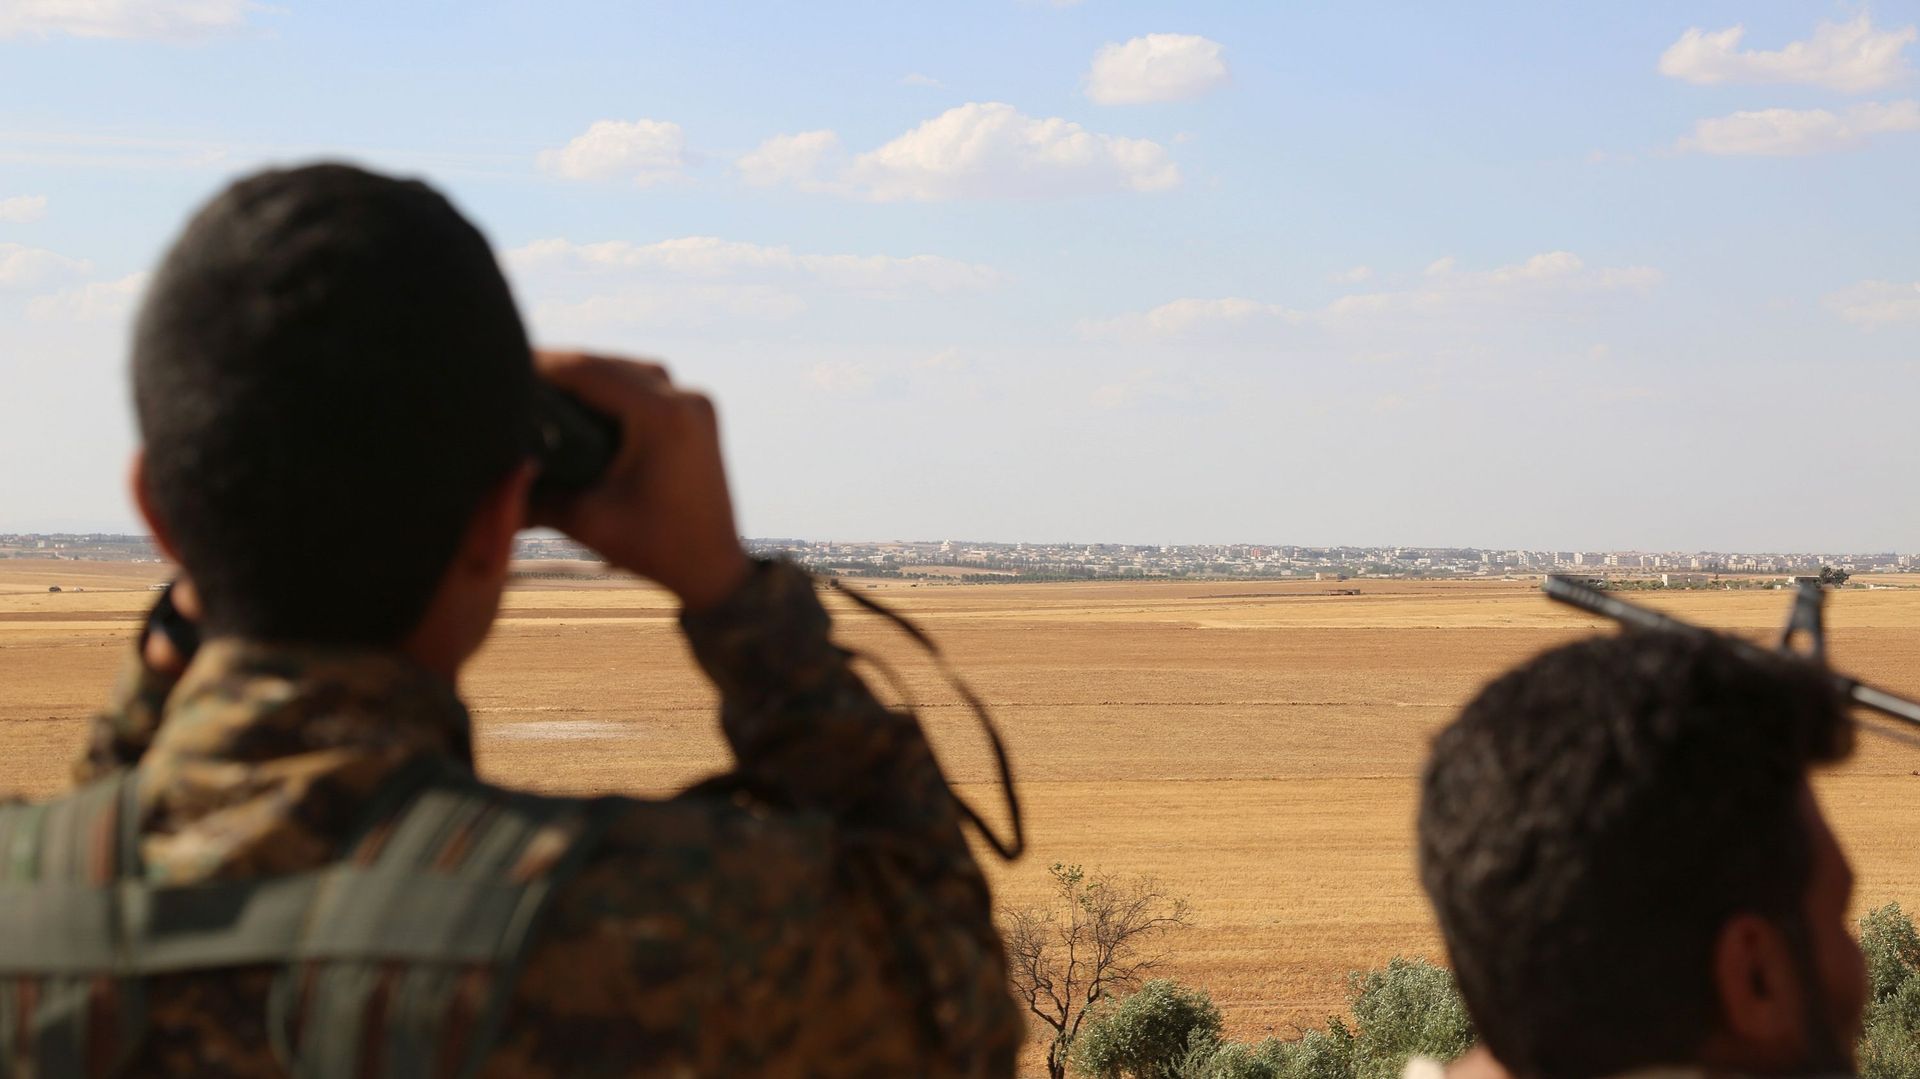 "Les informations selon lesquelles les gardes turcs auraient tiré sur des Syriens à la frontière ne reflètent pas la réalité", a de son côté réagi le ministère turc des Affaires étrangères dans un communiqué.